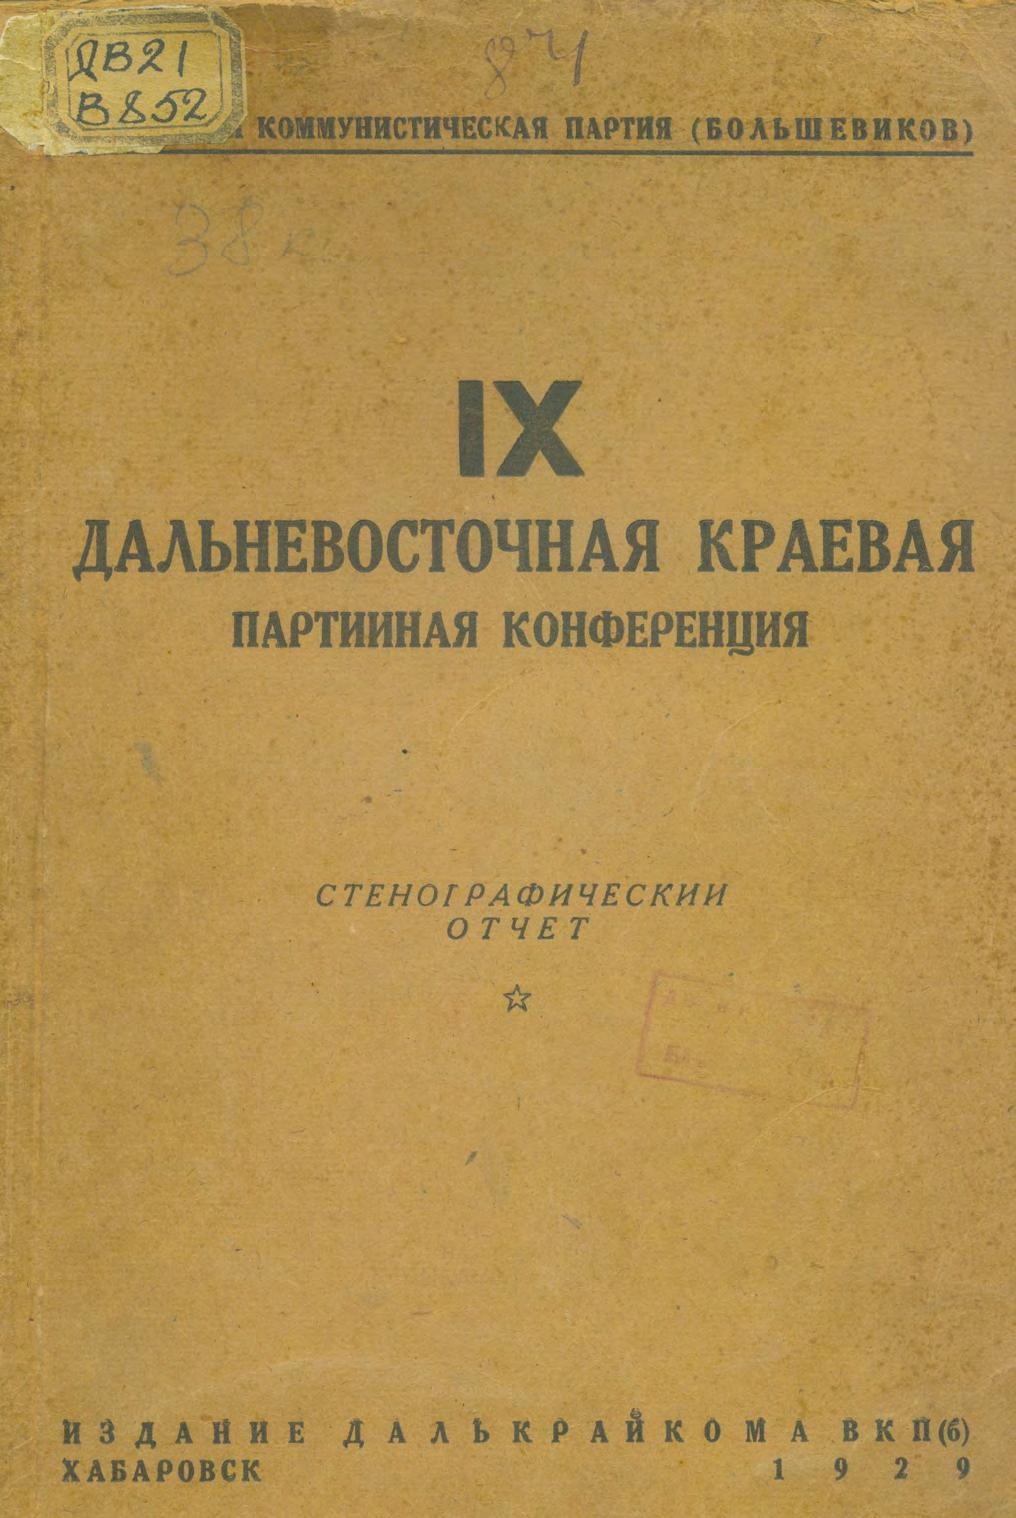 ВКП(б). Дальневосточная краевая партконференция, 9-я 1928 г. Стенографический отчет. – Хабаровск, 1929